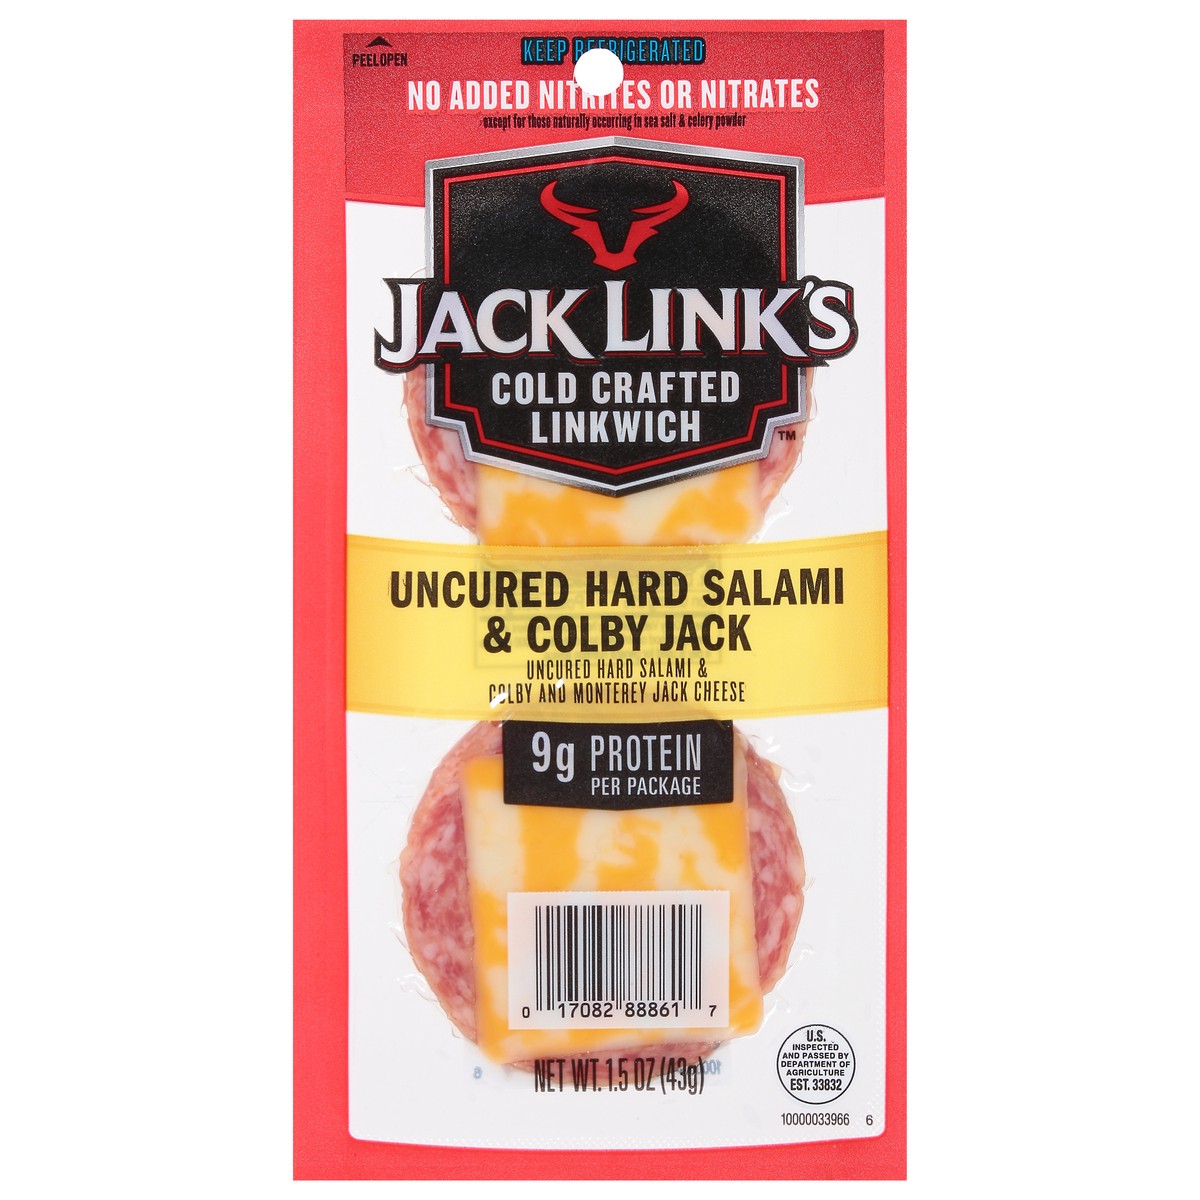 slide 1 of 2, Jack Link's Cold Crafted Uncured Hard Salami & Colby Jack Linkwich 1.5 oz, 1.5 oz